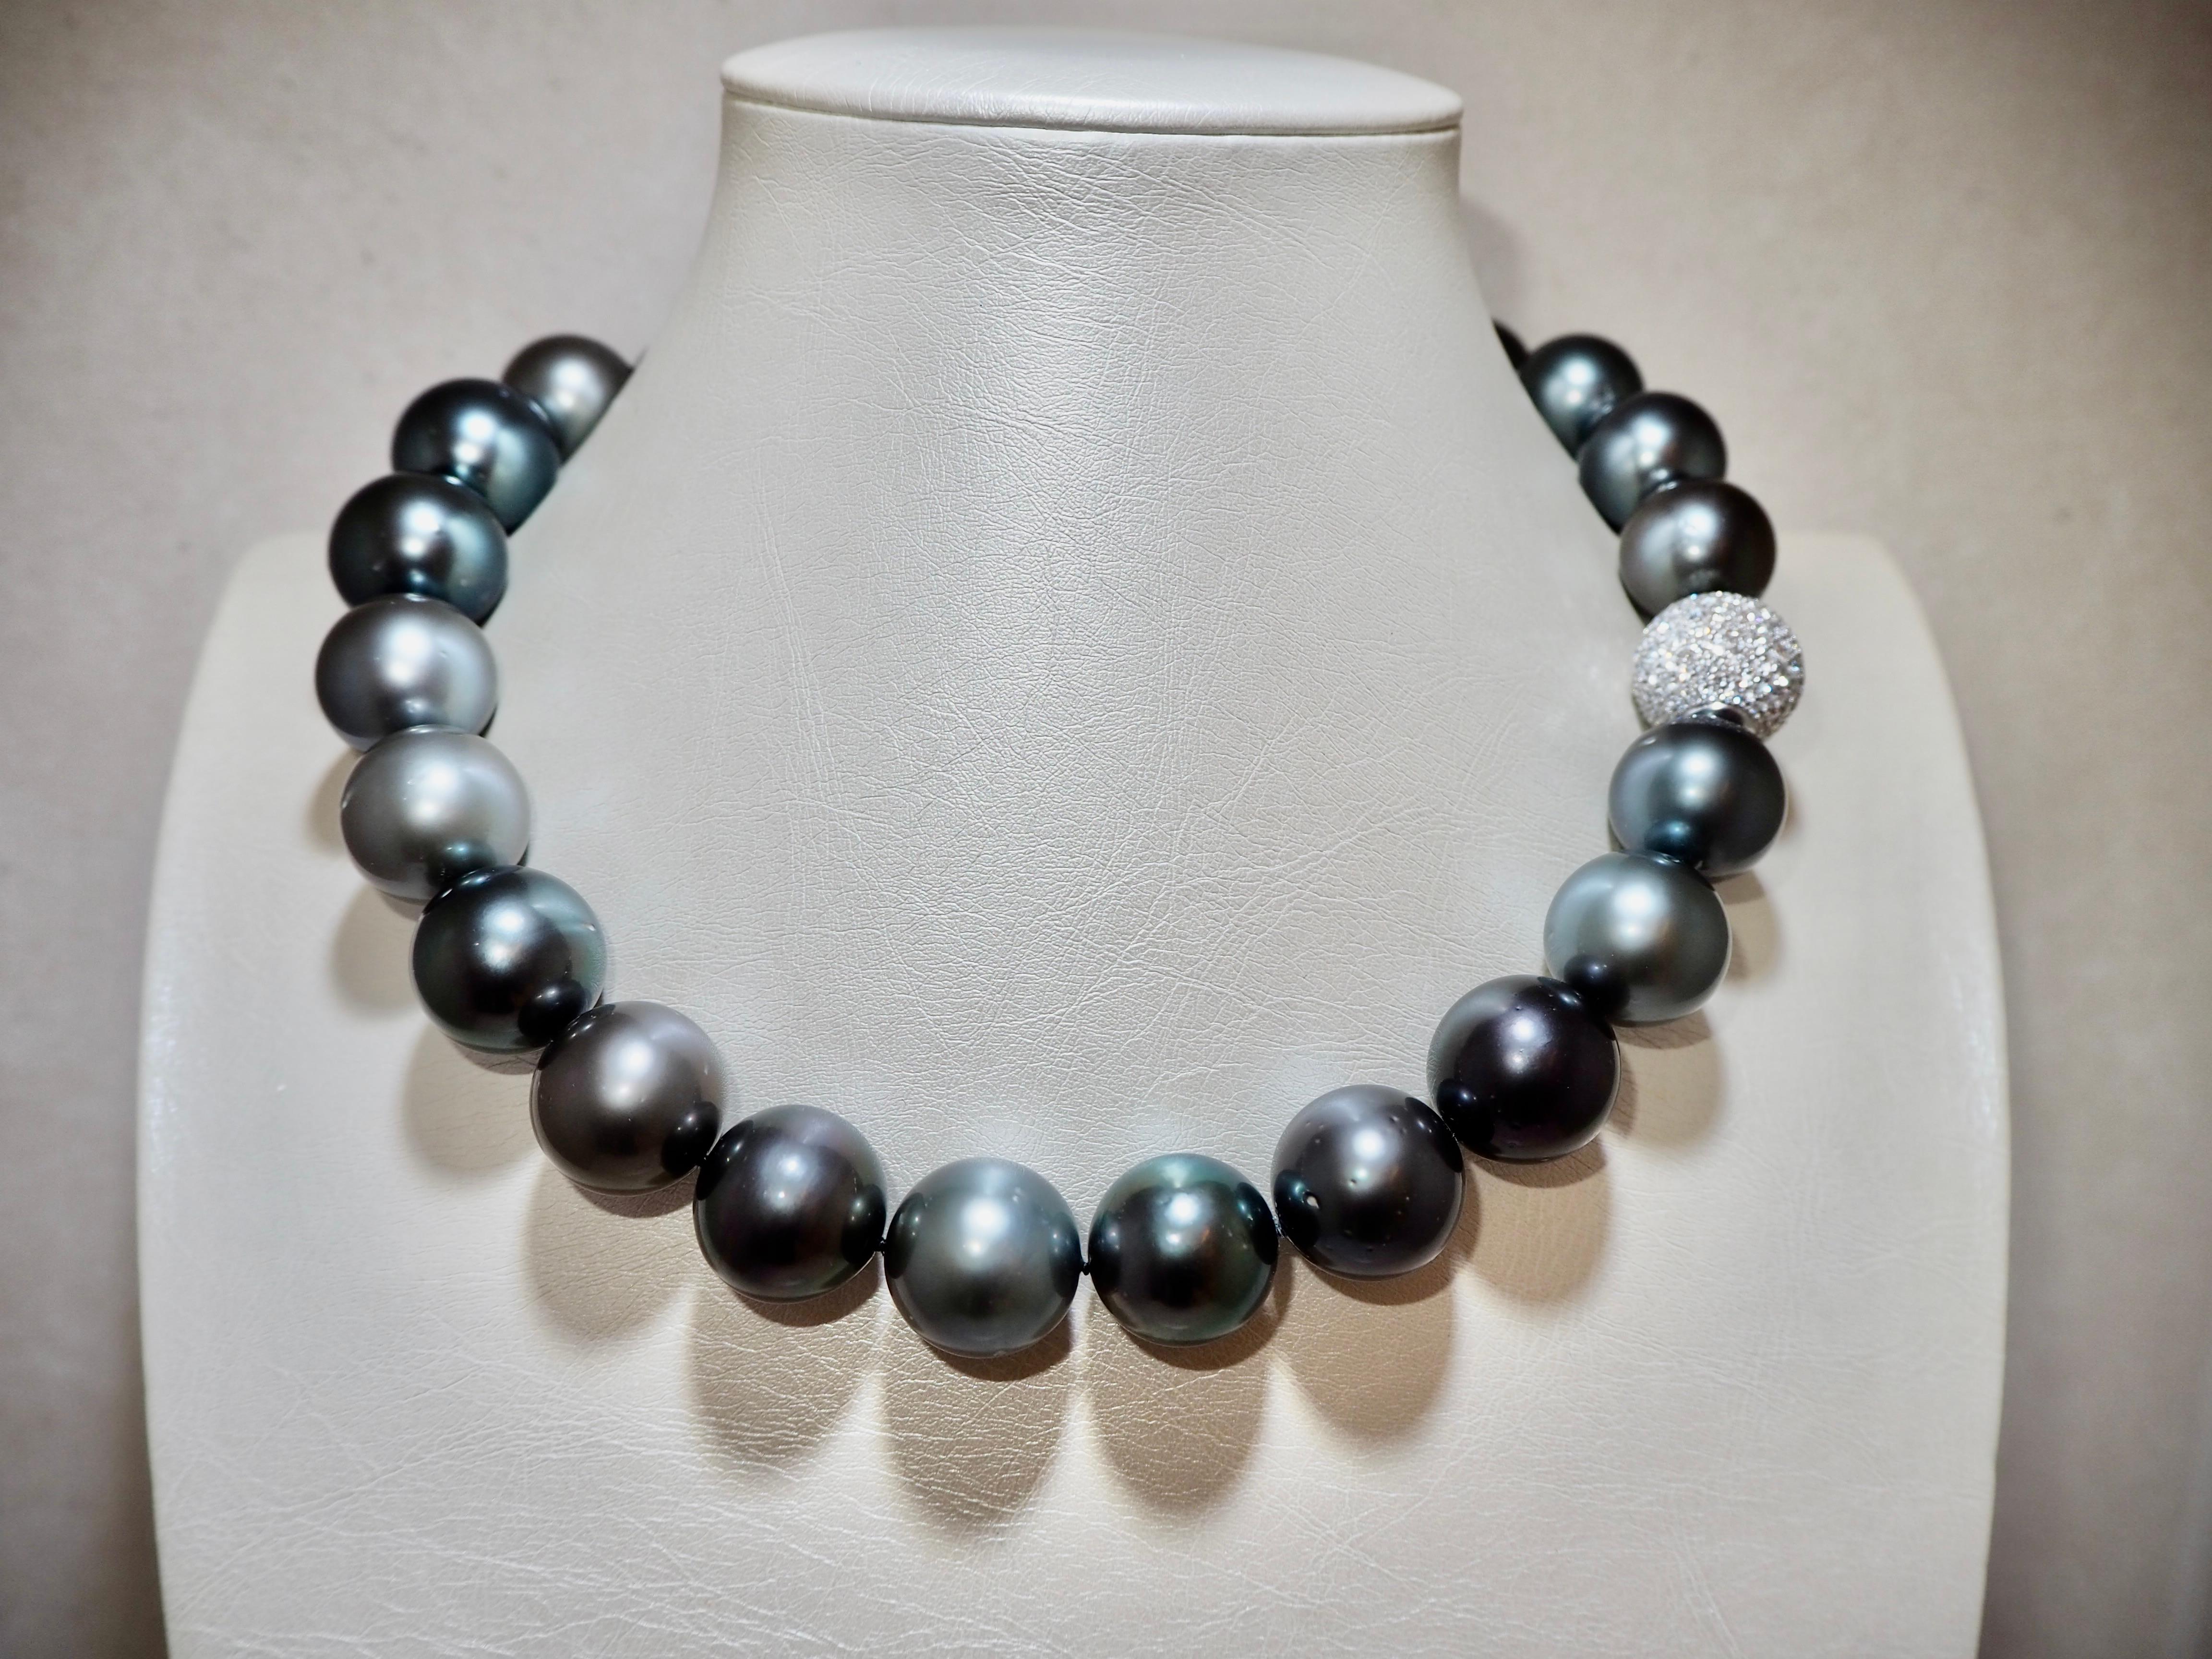 Le collier de perles de Tahiti de Polynésie française est composé de 24 perles dont le diamètre varie entre 18 et 20 mm. Les perles sont classées AA, ce qui signifie que 80 % de leur surface est exempte d'inclusions.

Le collier est doté d'un